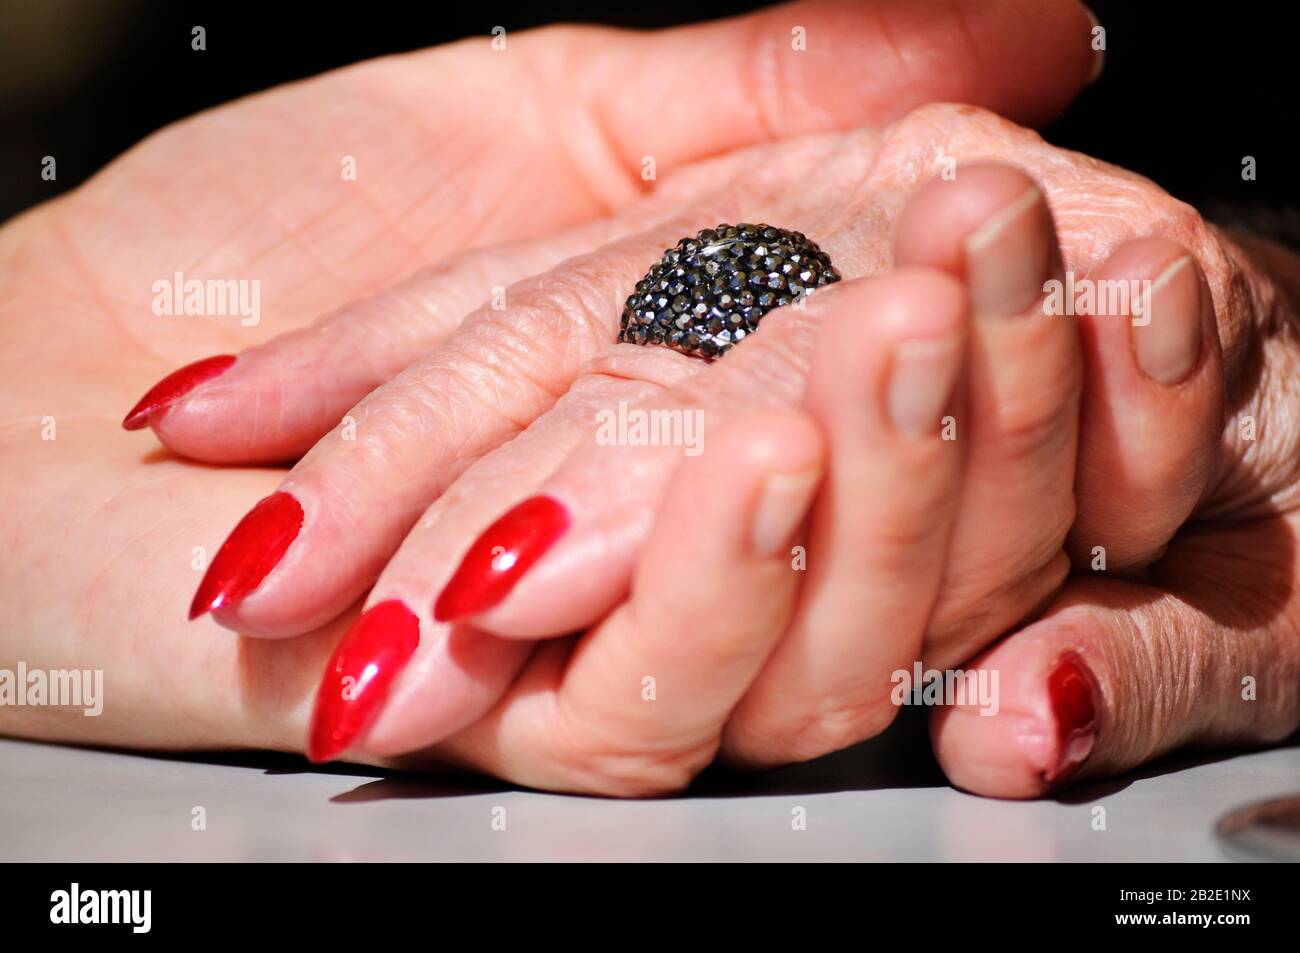 Erwachsene Tochter hält Mutter zerknitterte alte Hand, die einen Ring und einen roten nagellack trägt. Szene wurde teilweise mit einem dramatischen Softseffekt beleuchtet. Hände auf dem Tabl Stockfoto